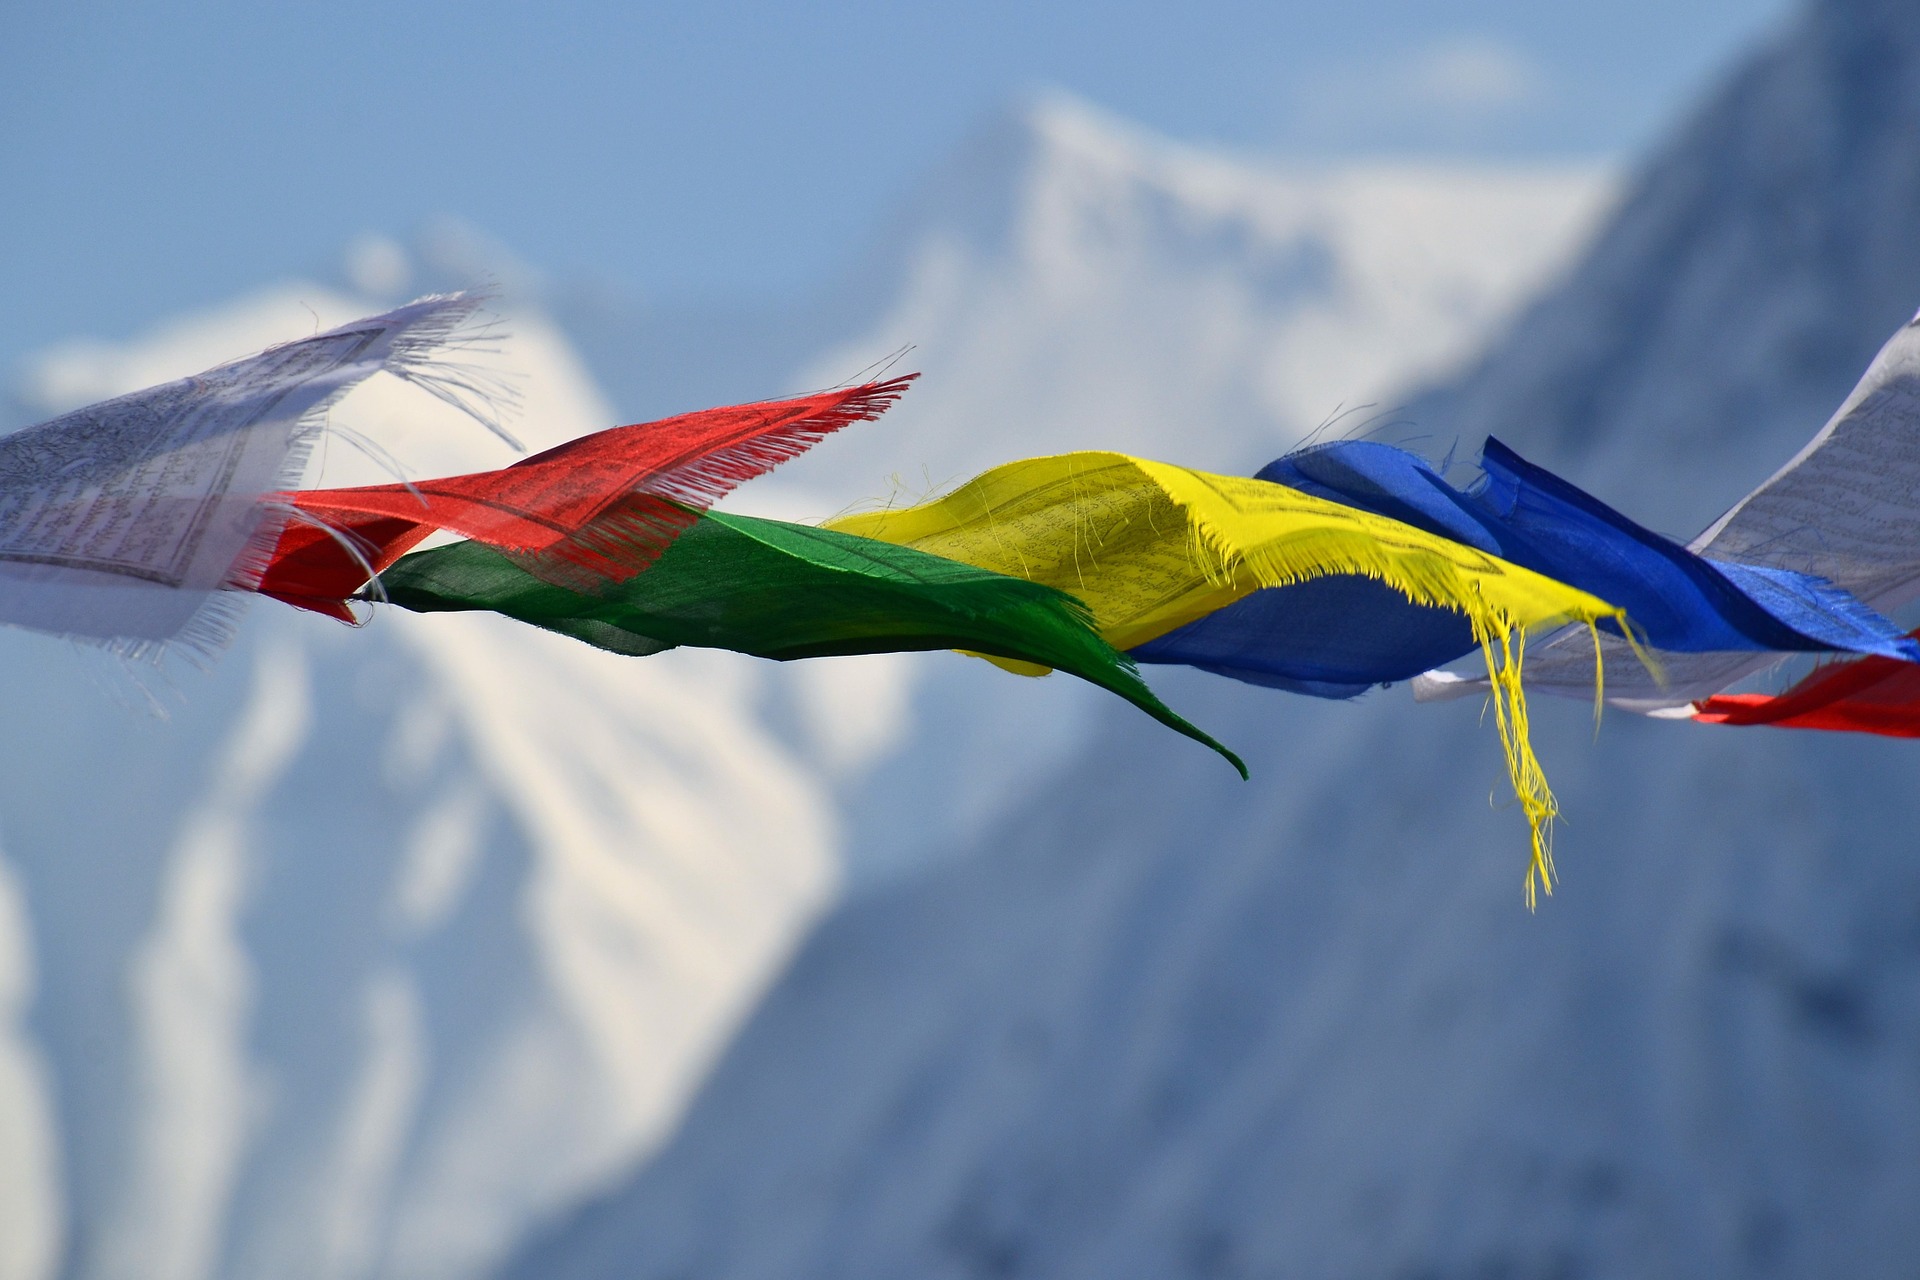 tibetan-prayer-flags-1384193_1920.jpg